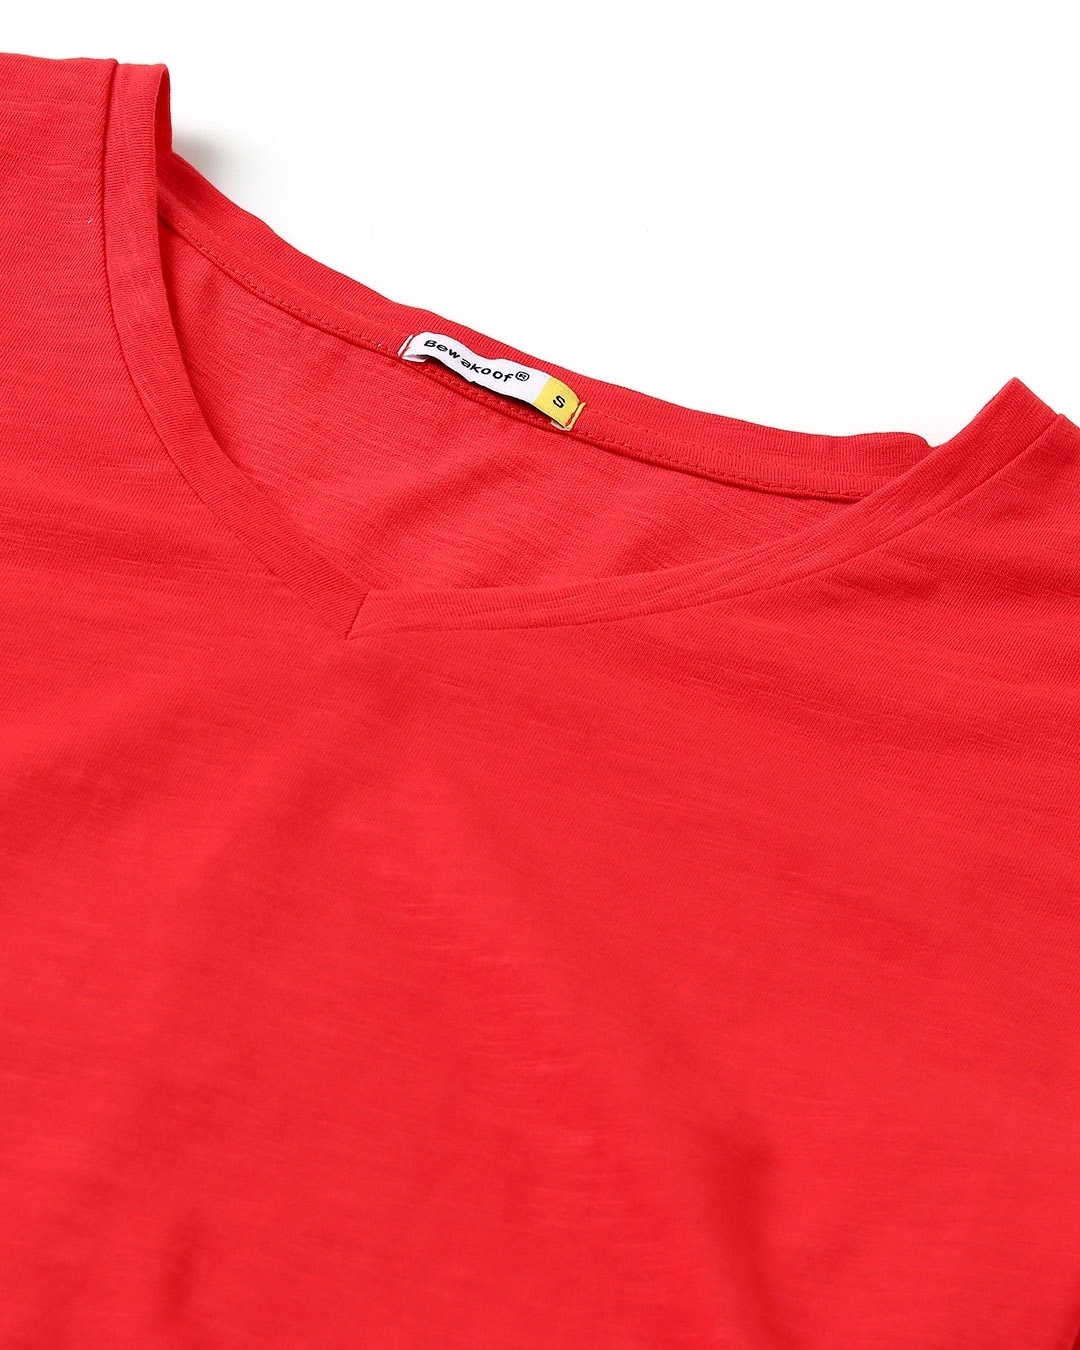 Shop Retro Red V-Neck T-Shirt